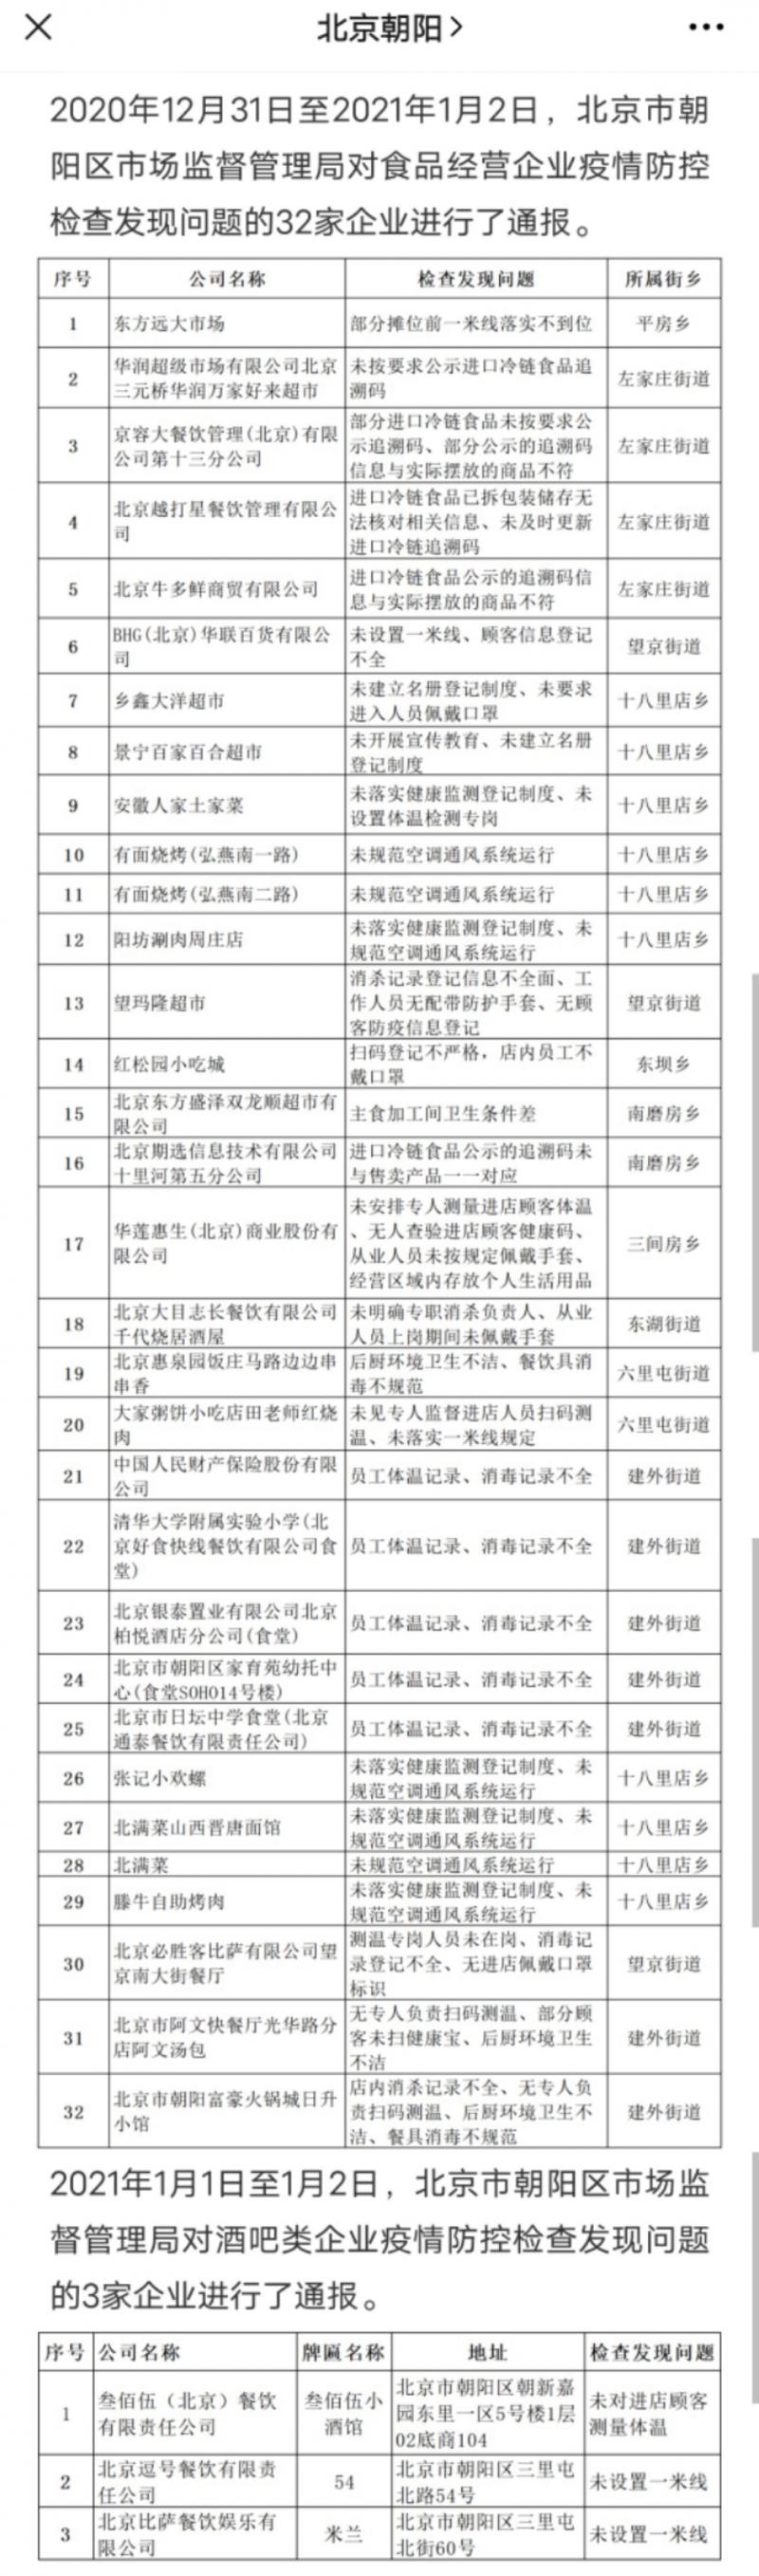 北京朝阳：通报35家未落实疫情防控责任企业